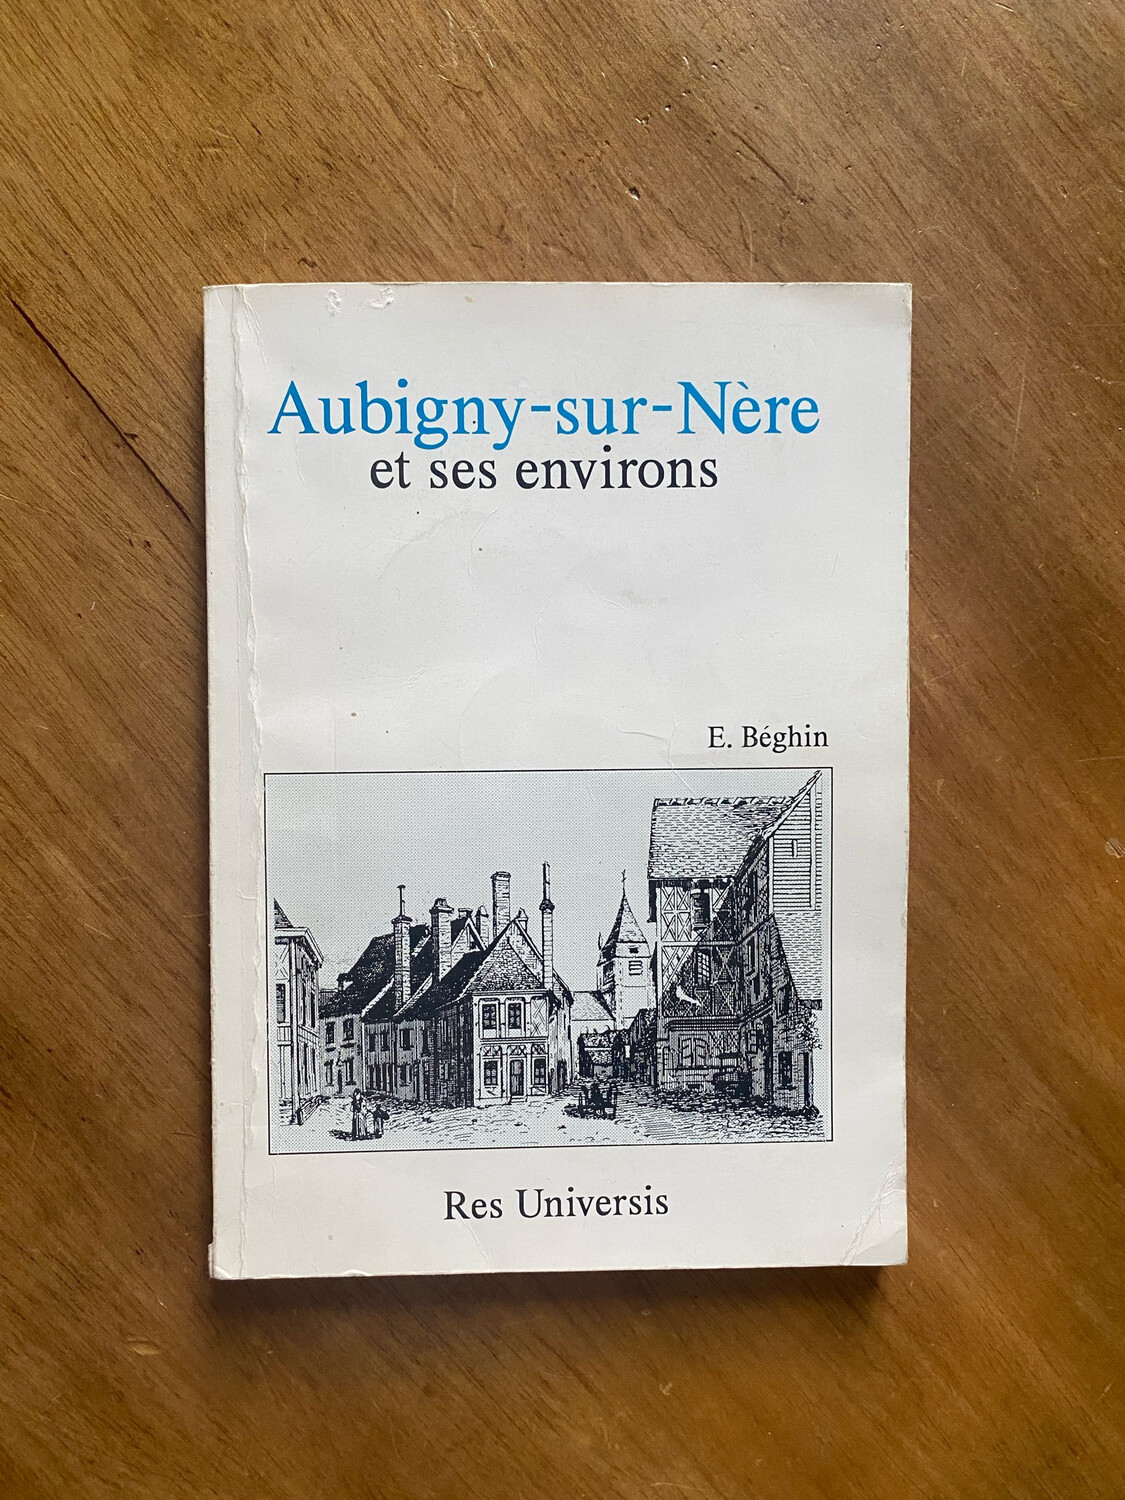 Livre « Aubigny-Sur-Nère et ses environs » par M.Buhot de Kersers